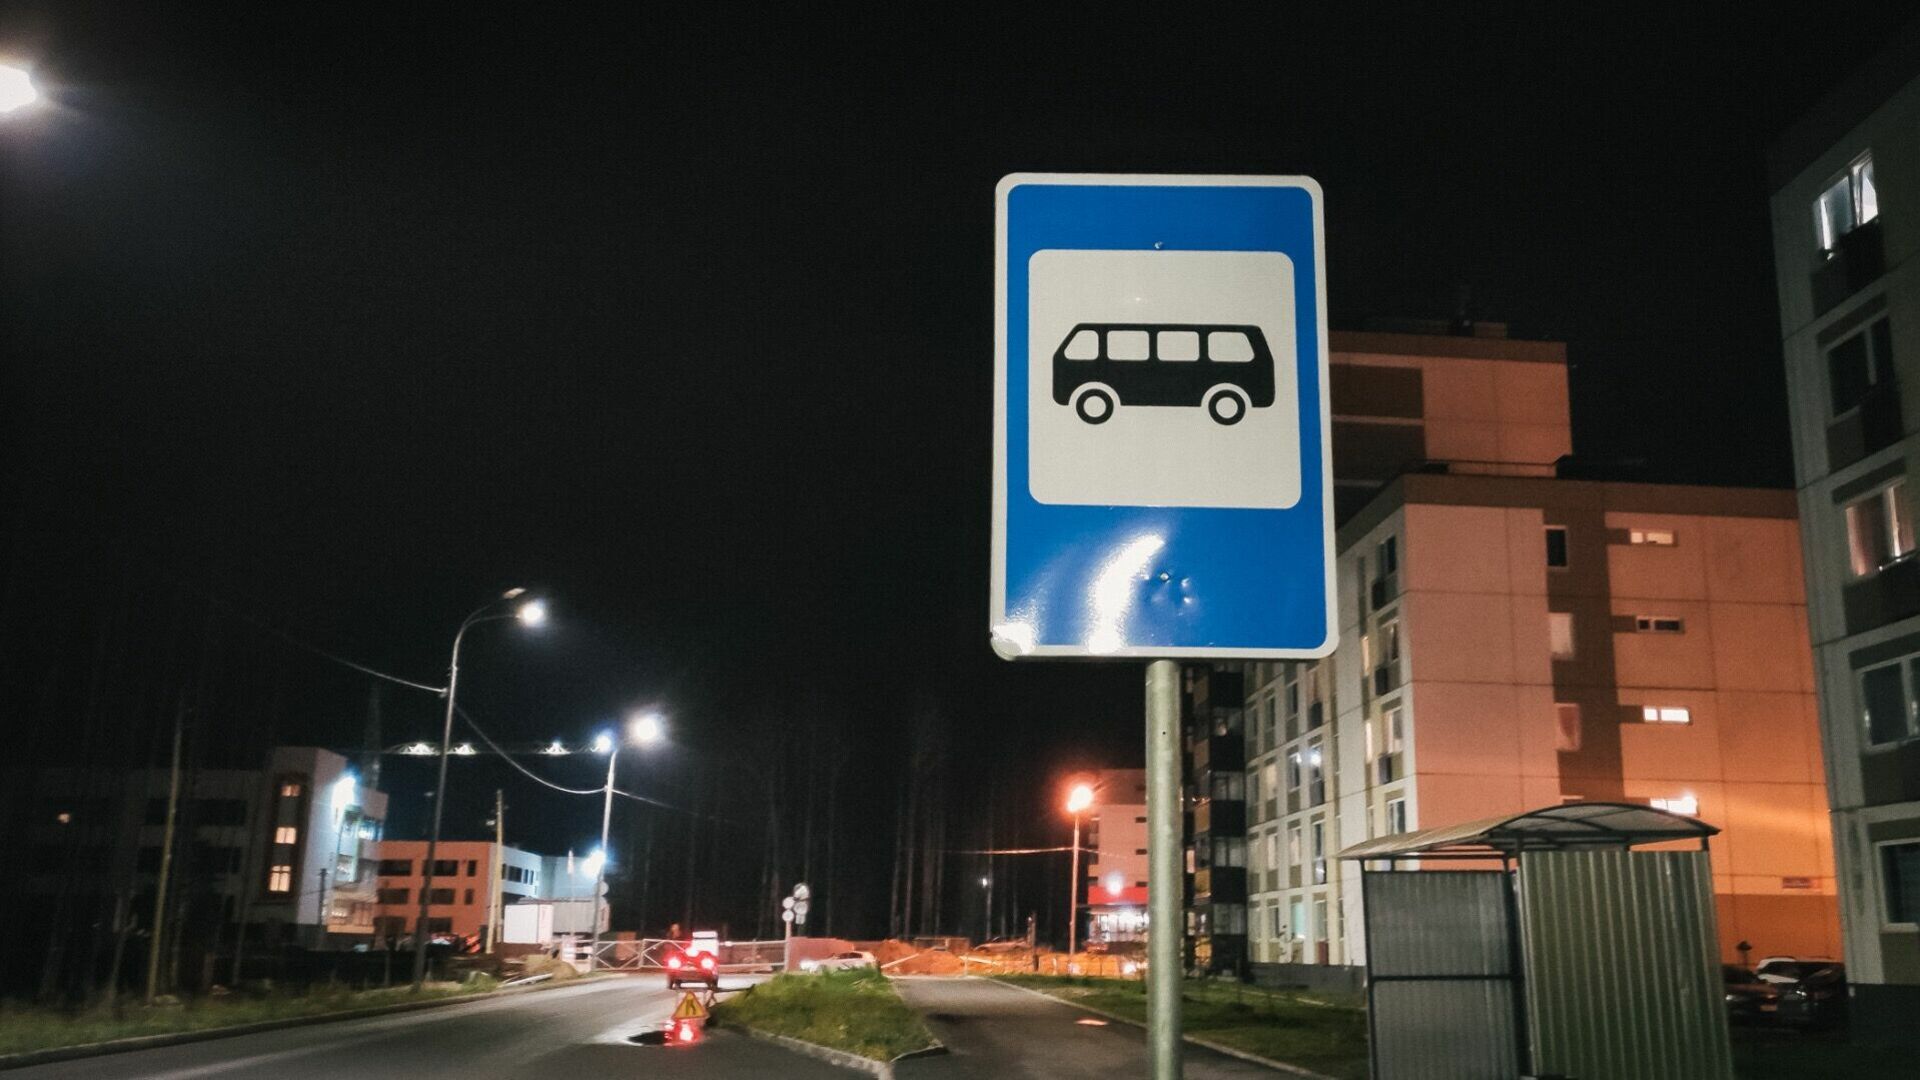 Тяжело уехать куда-то на общественном транспорте по вечерам в Челябинске